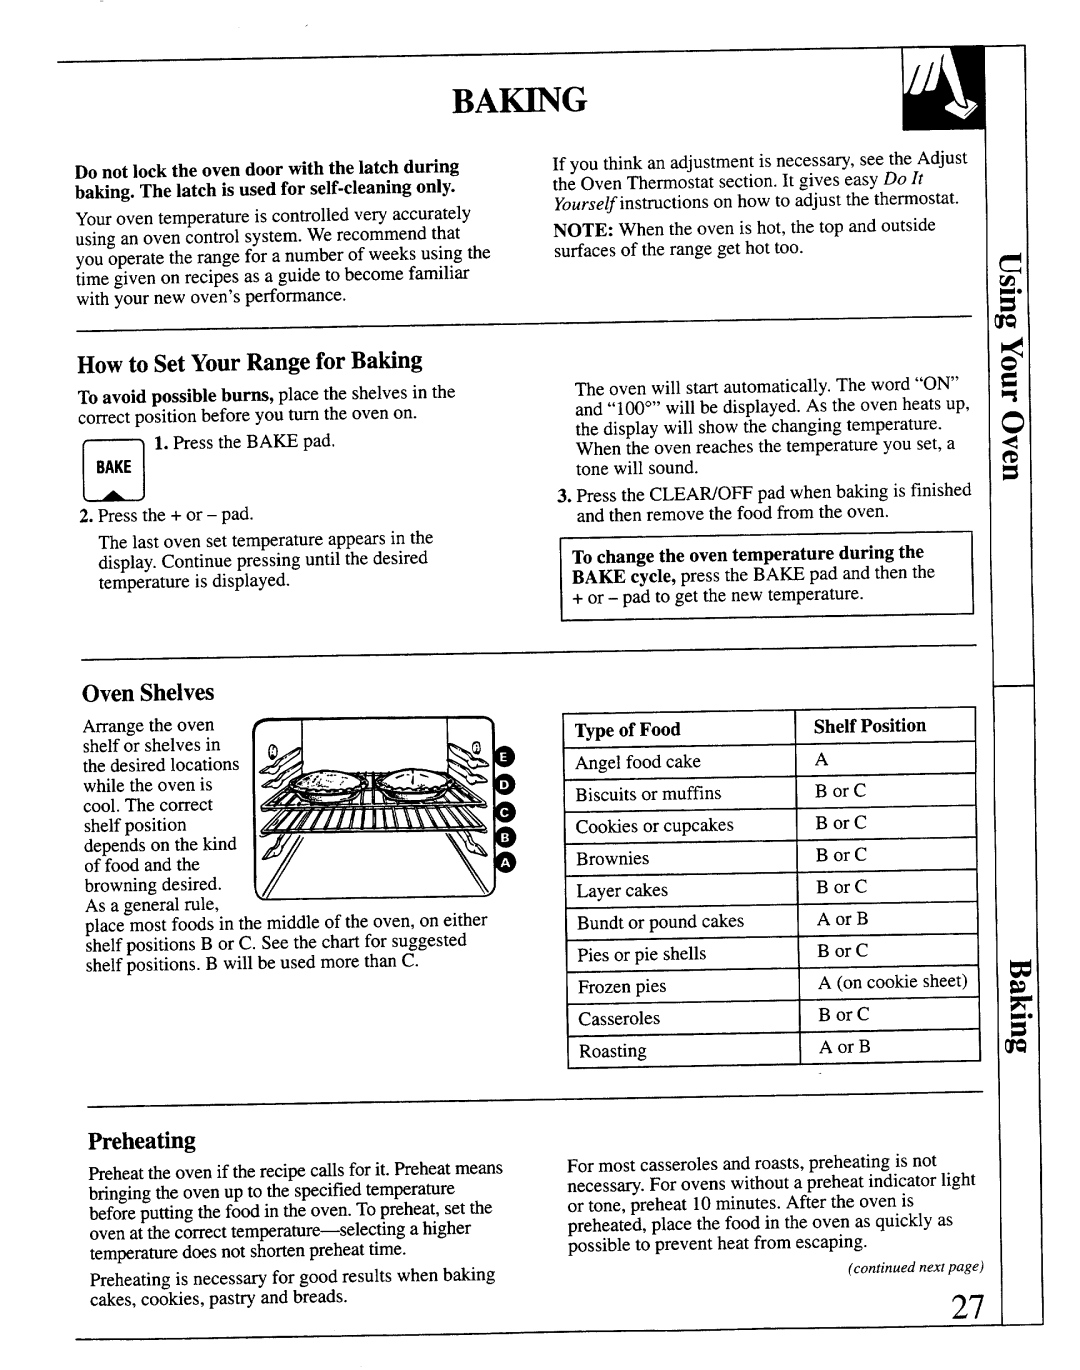 GE JSP69 warranty Ba~G, How to Set YourRange for Bating, Preheating, Oven Shelves 